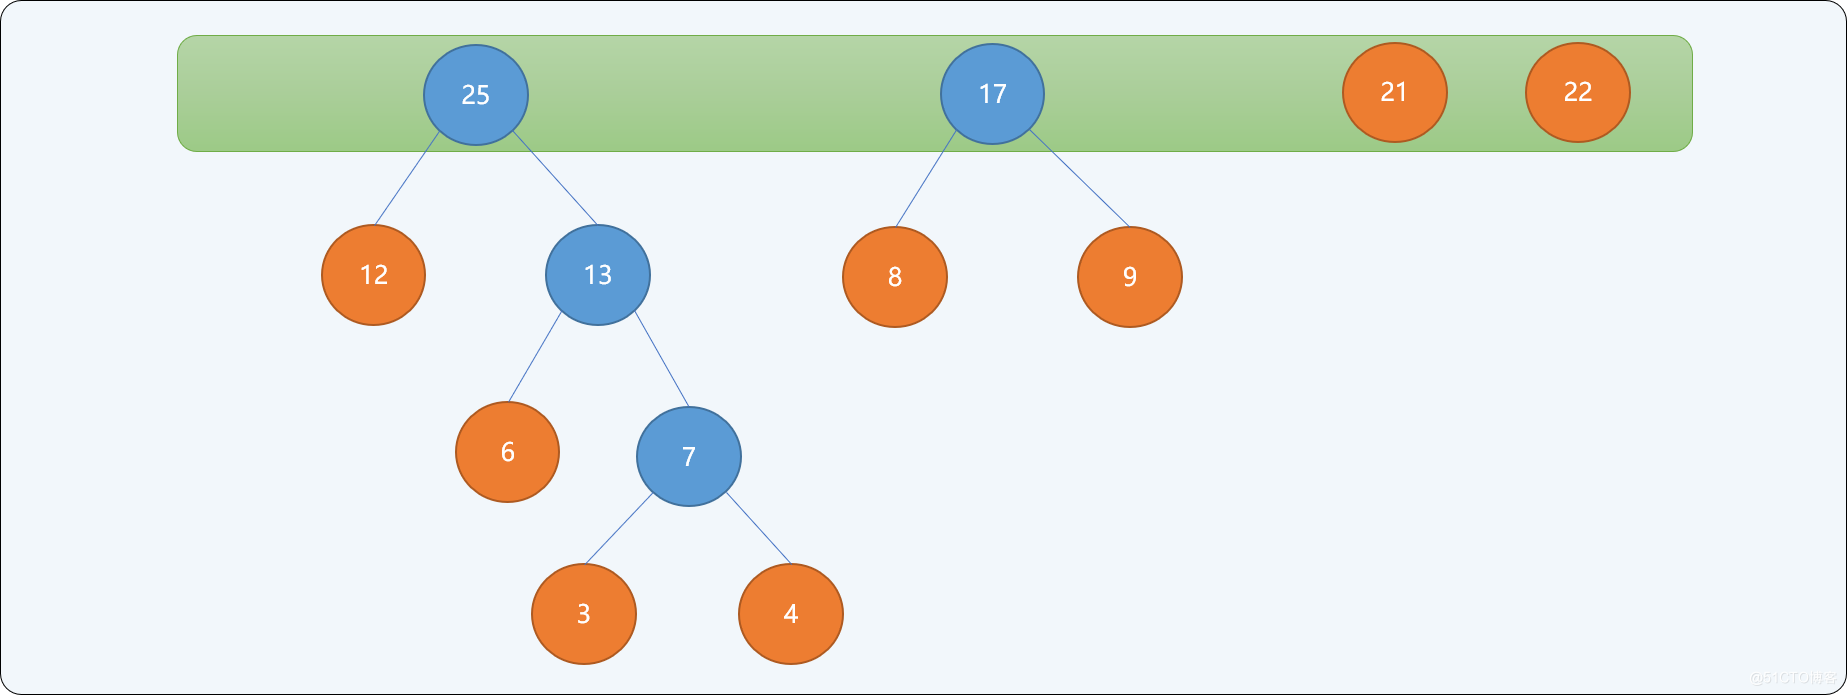 C++哈夫曼树的原理是什么及怎么实现